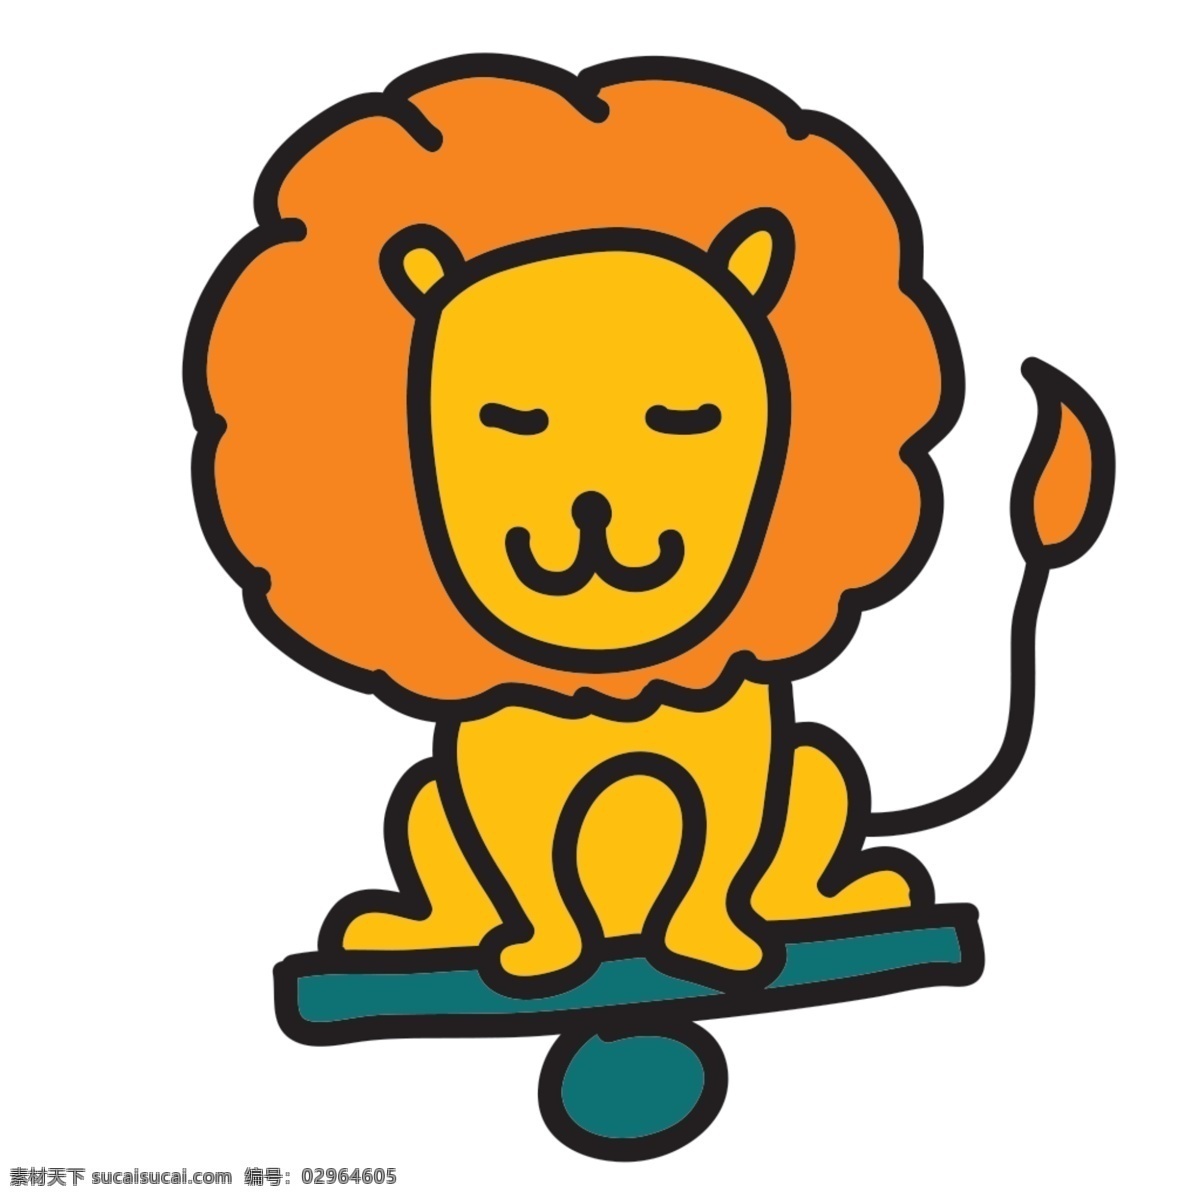 网页 ui 动物 狮子 icon 图标 图标设计 icon设计 icon图标 网页图标 狮子图标 狮子icon 狮子图标设计 动物图标